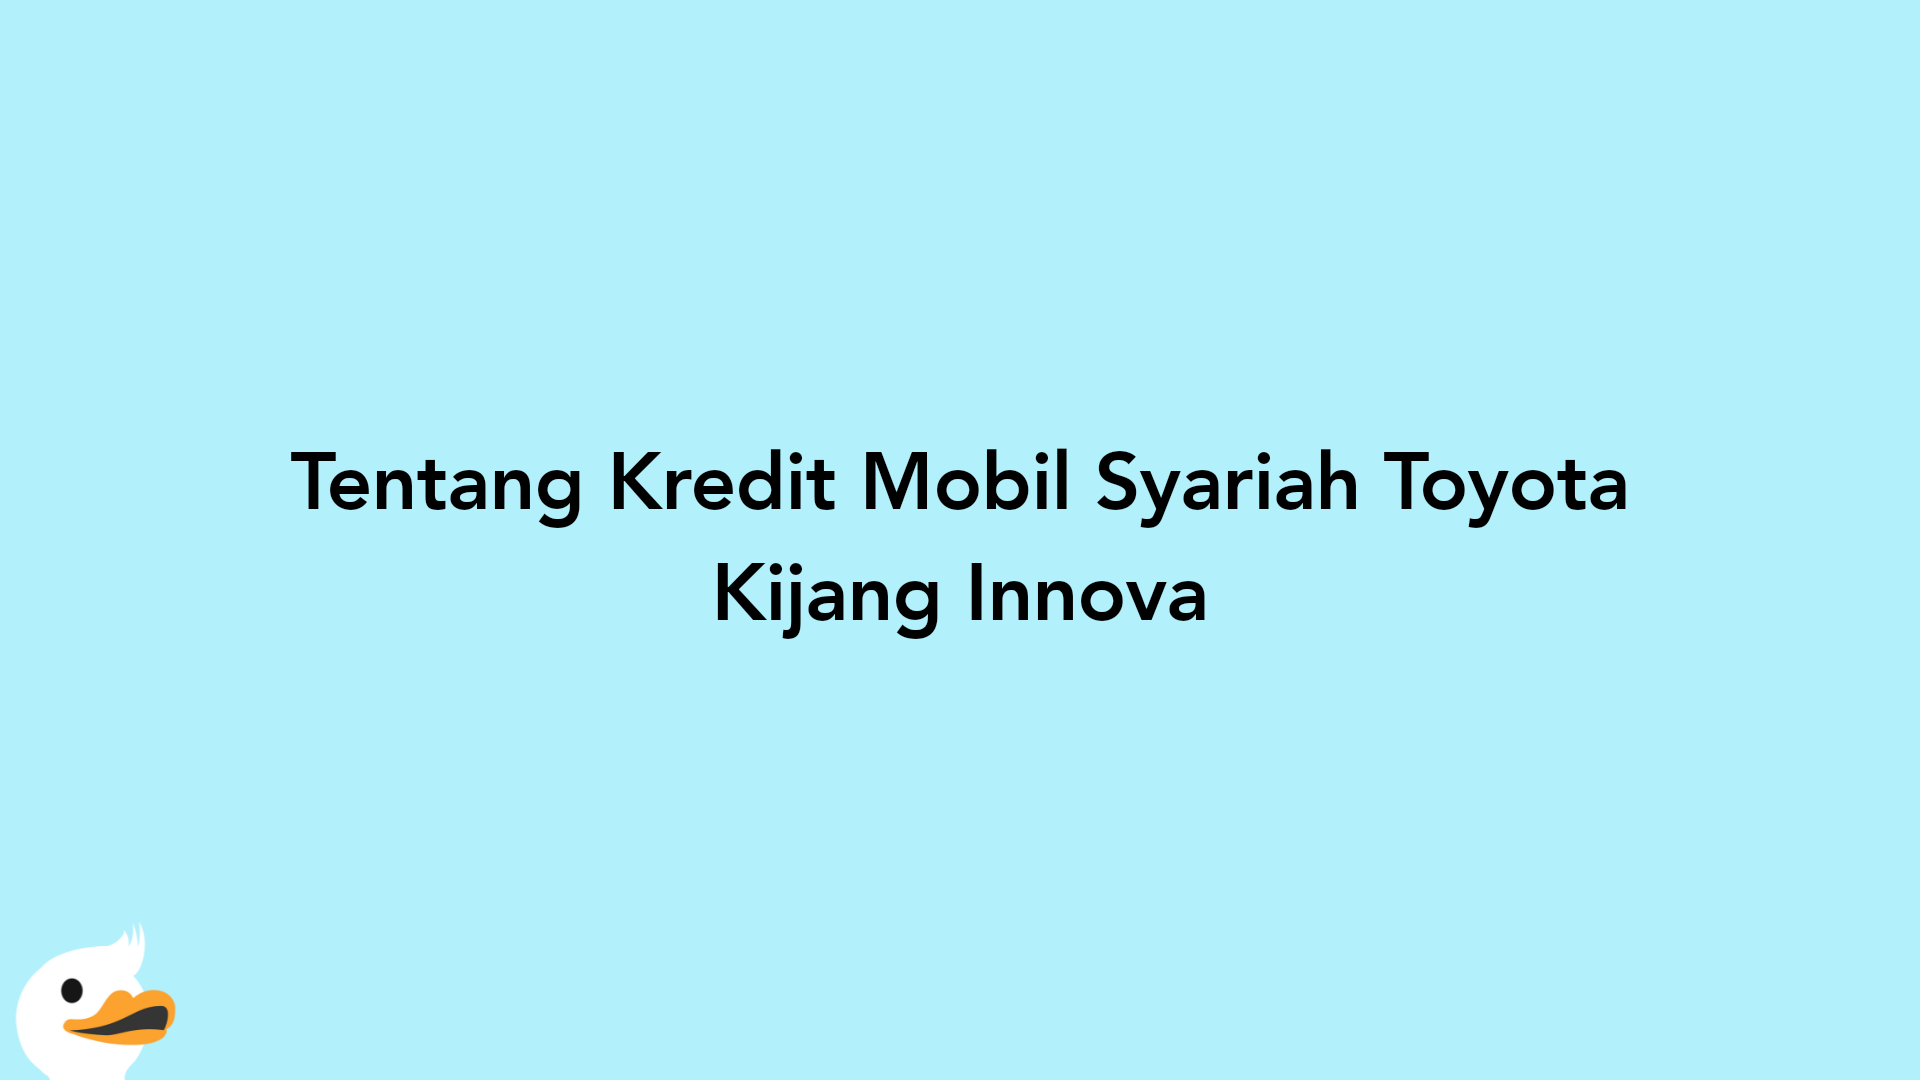 Tentang Kredit Mobil Syariah Toyota Kijang Innova